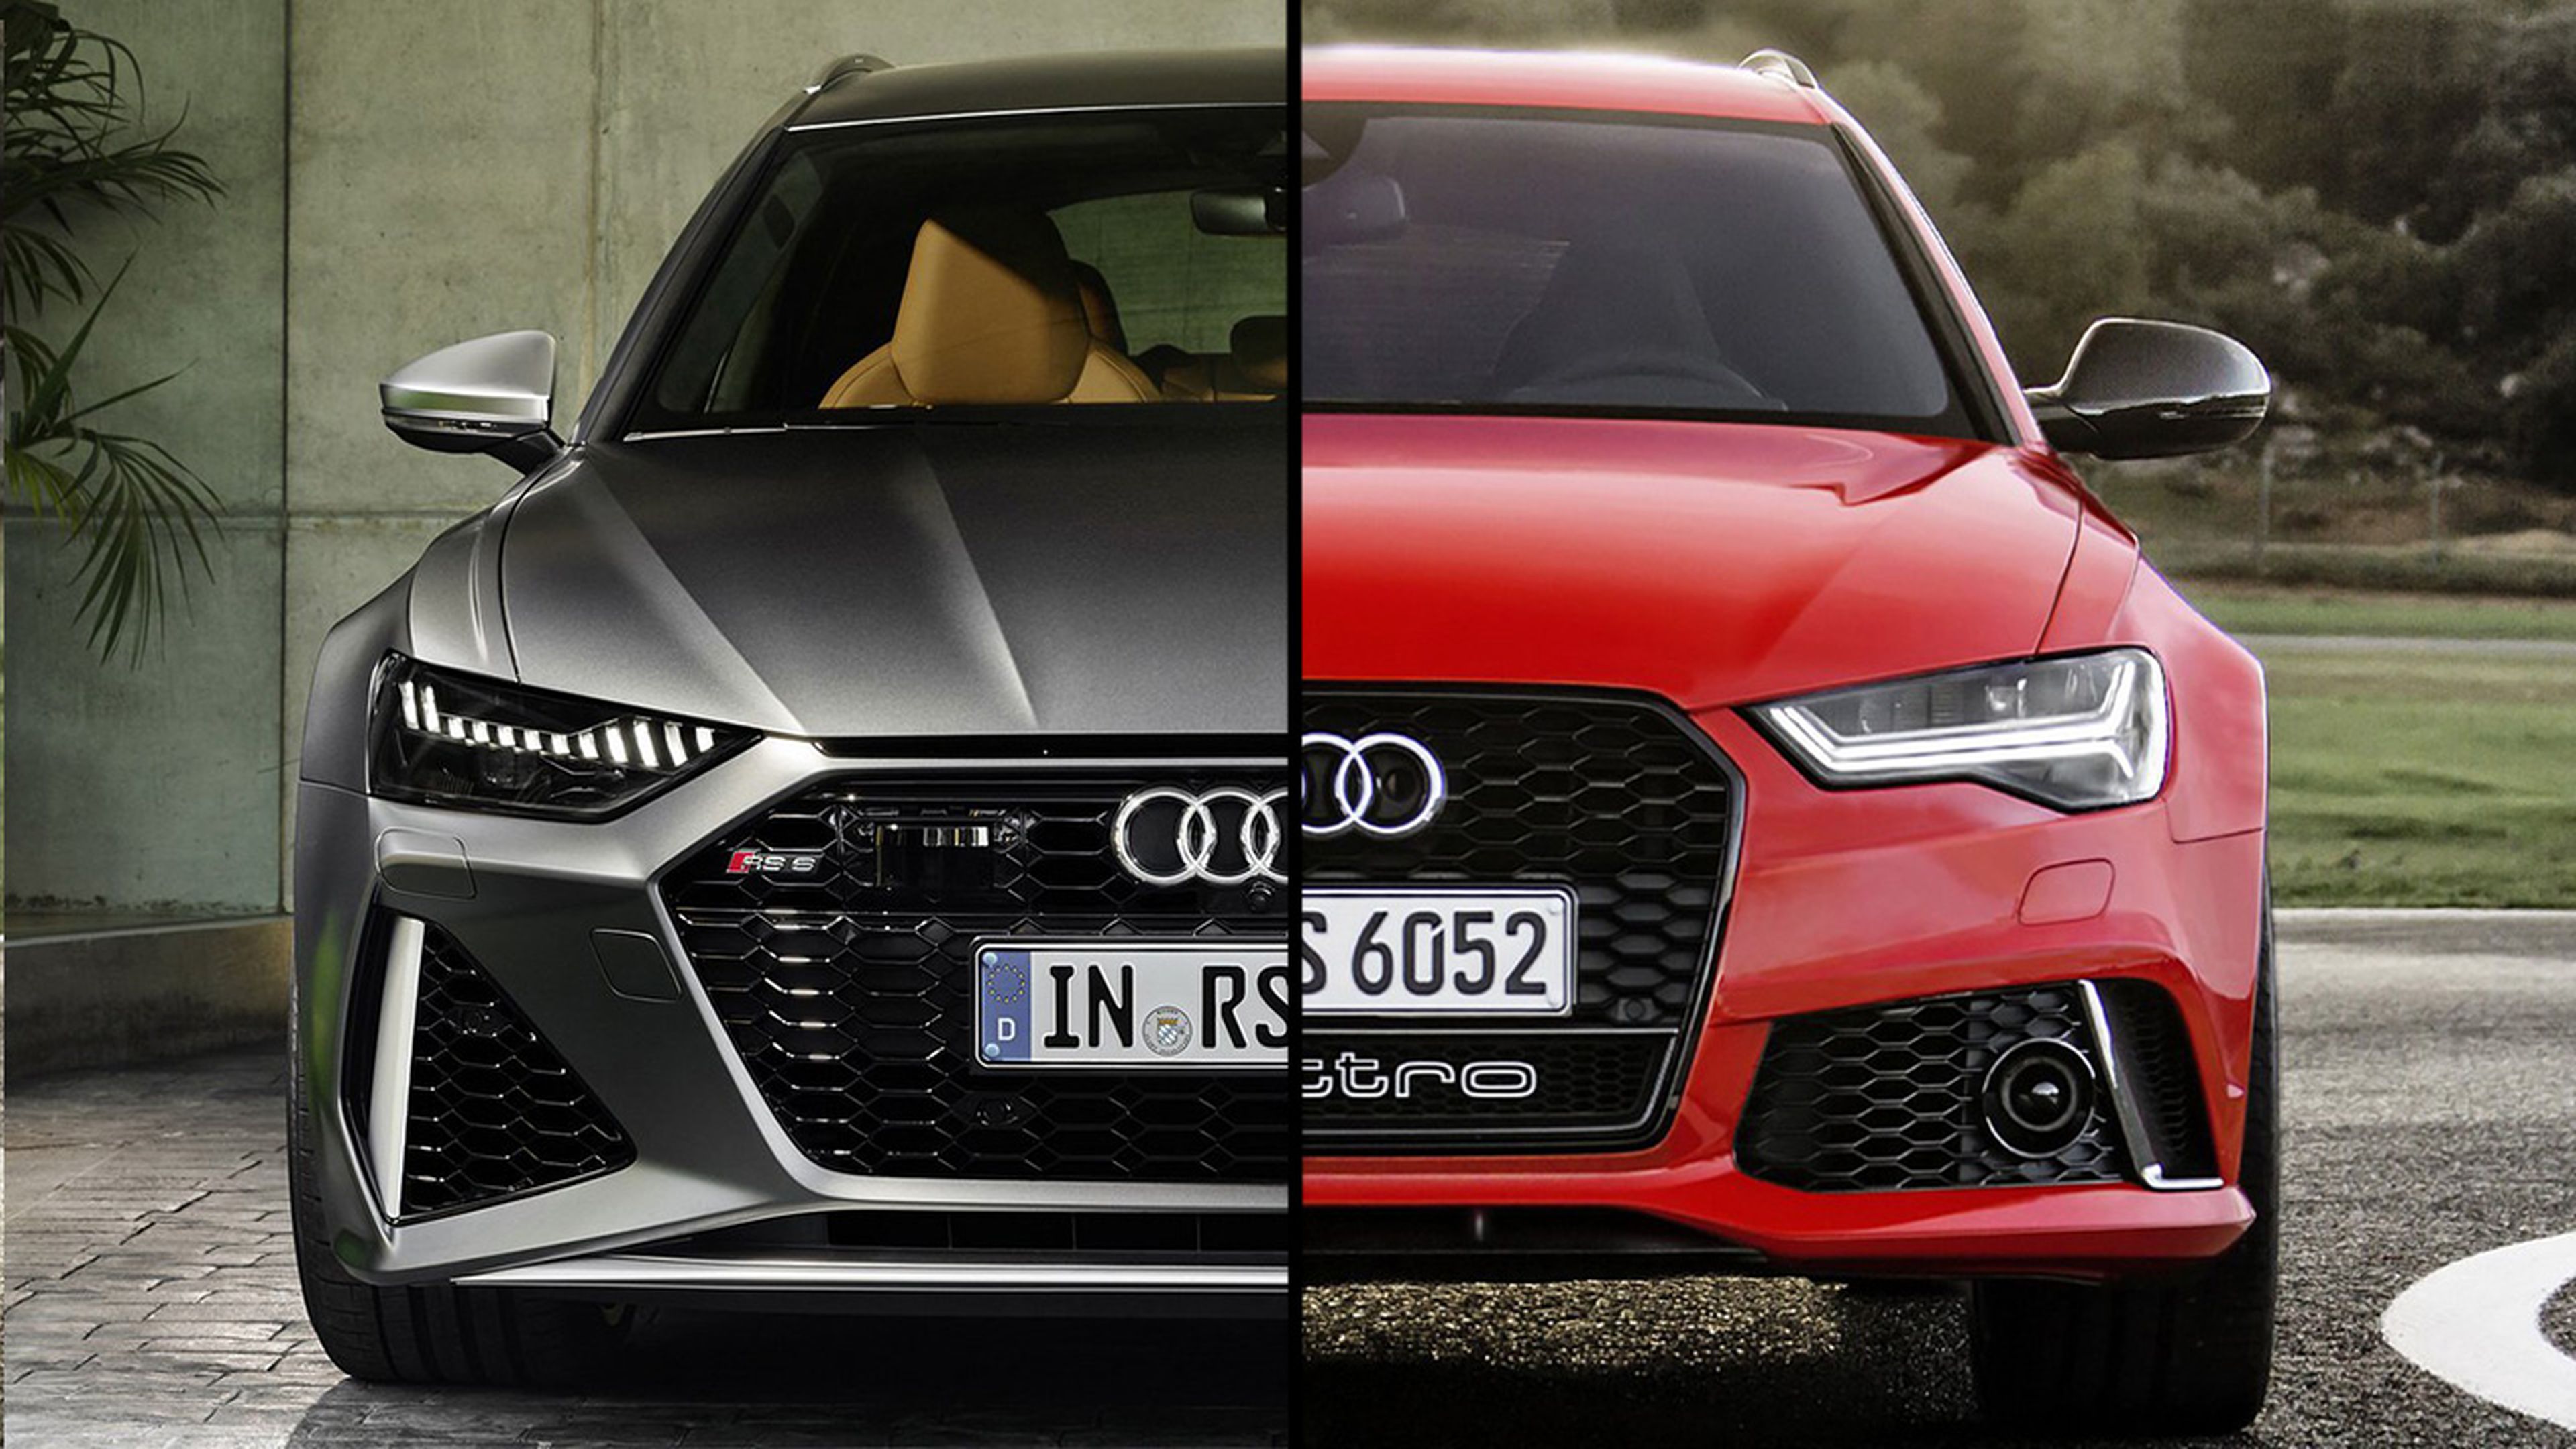 Diferencias Audi RS 6 Avant 2013 vs RS 6 Avant 2020